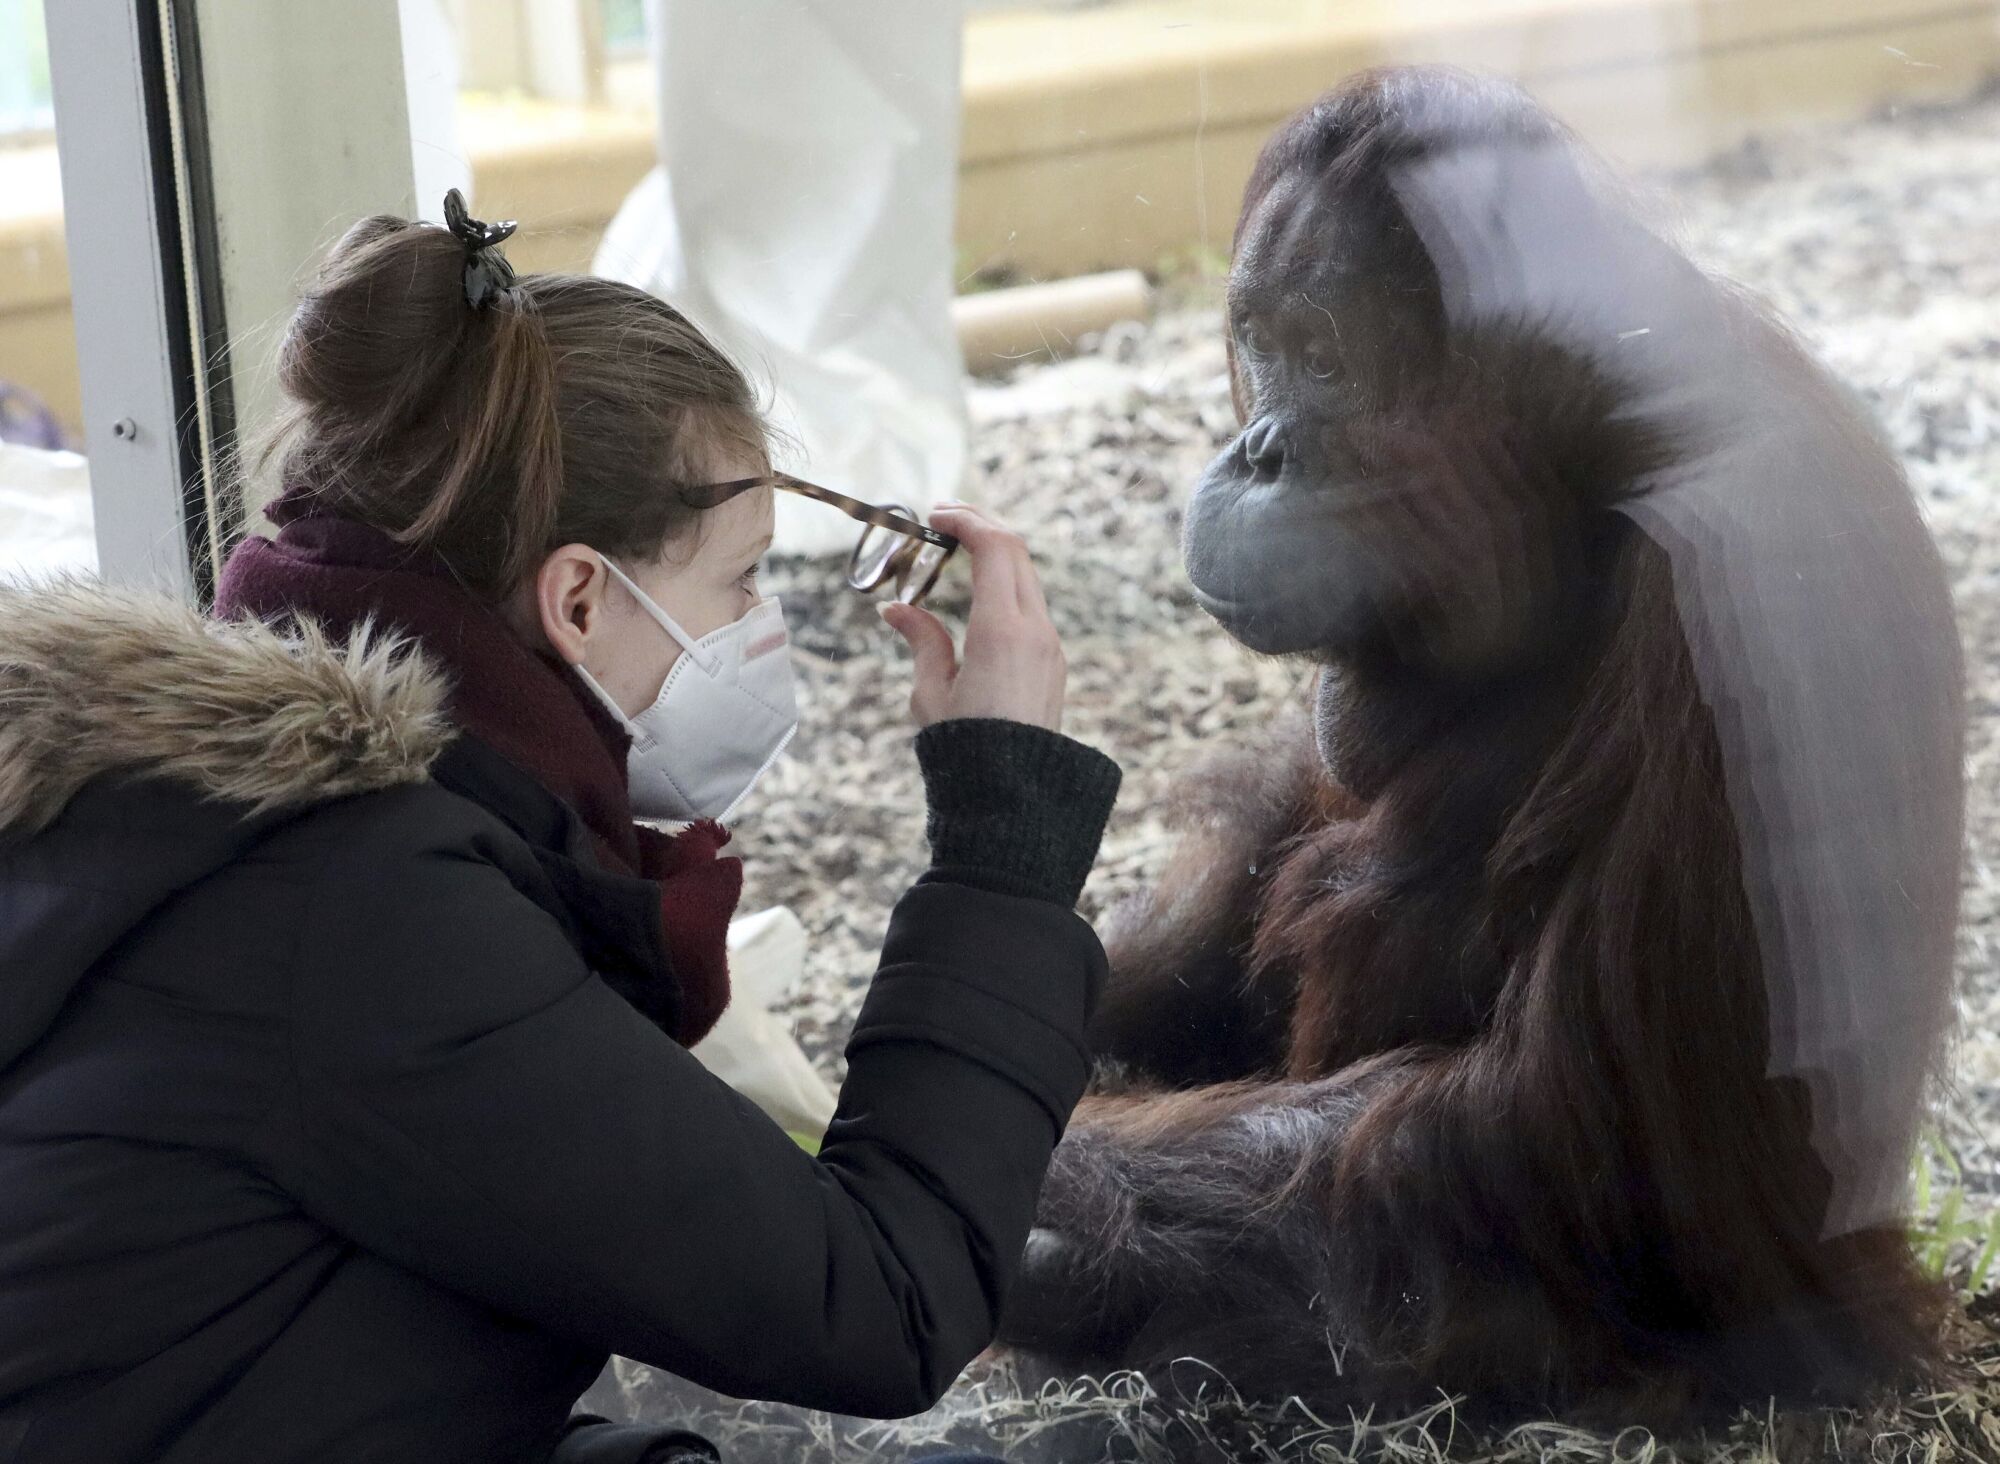 Un visitante usa una máscara mientras observa un orangután en un zoológico de Viena, Austria. 